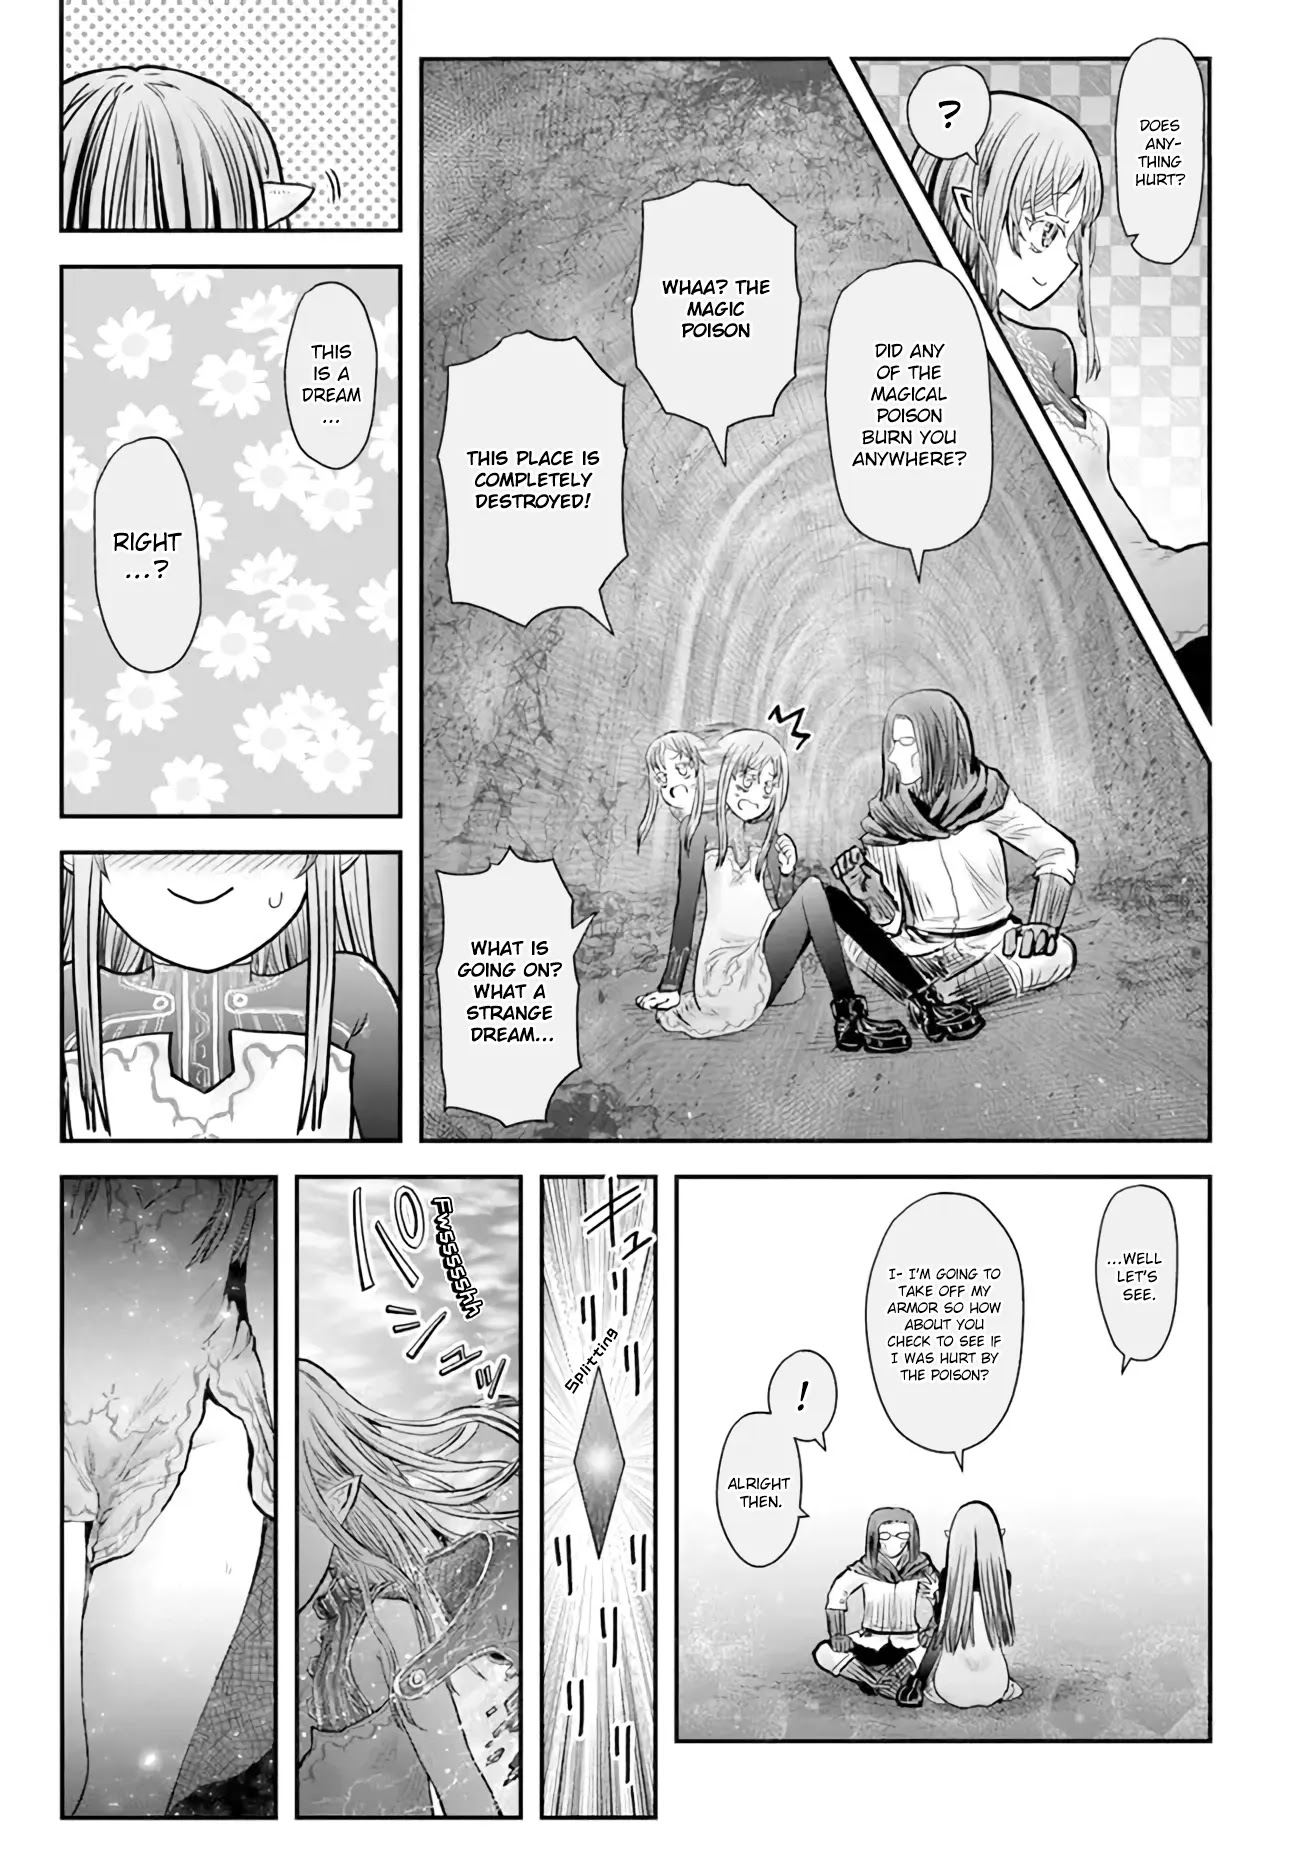 Isekai Ojisan, Chapter 49 - Isekai Ojisan Manga Online